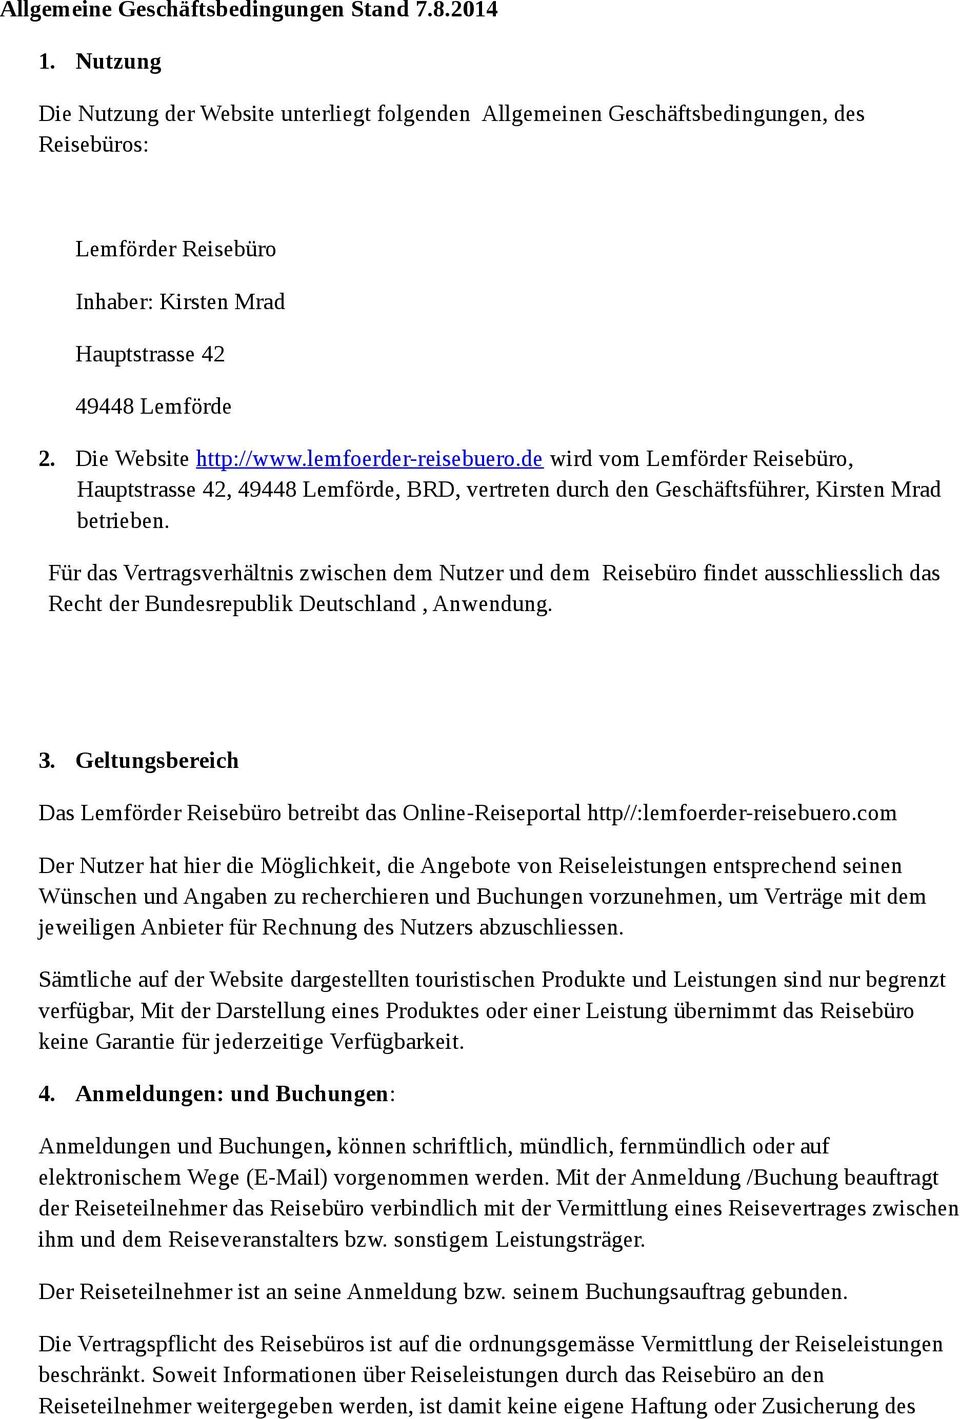 Die Website http://www.lemfoerder-reisebuero.de wird vom Lemförder Reisebüro, Hauptstrasse 42, 49448 Lemförde, BRD, vertreten durch den Geschäftsführer, Kirsten Mrad betrieben.